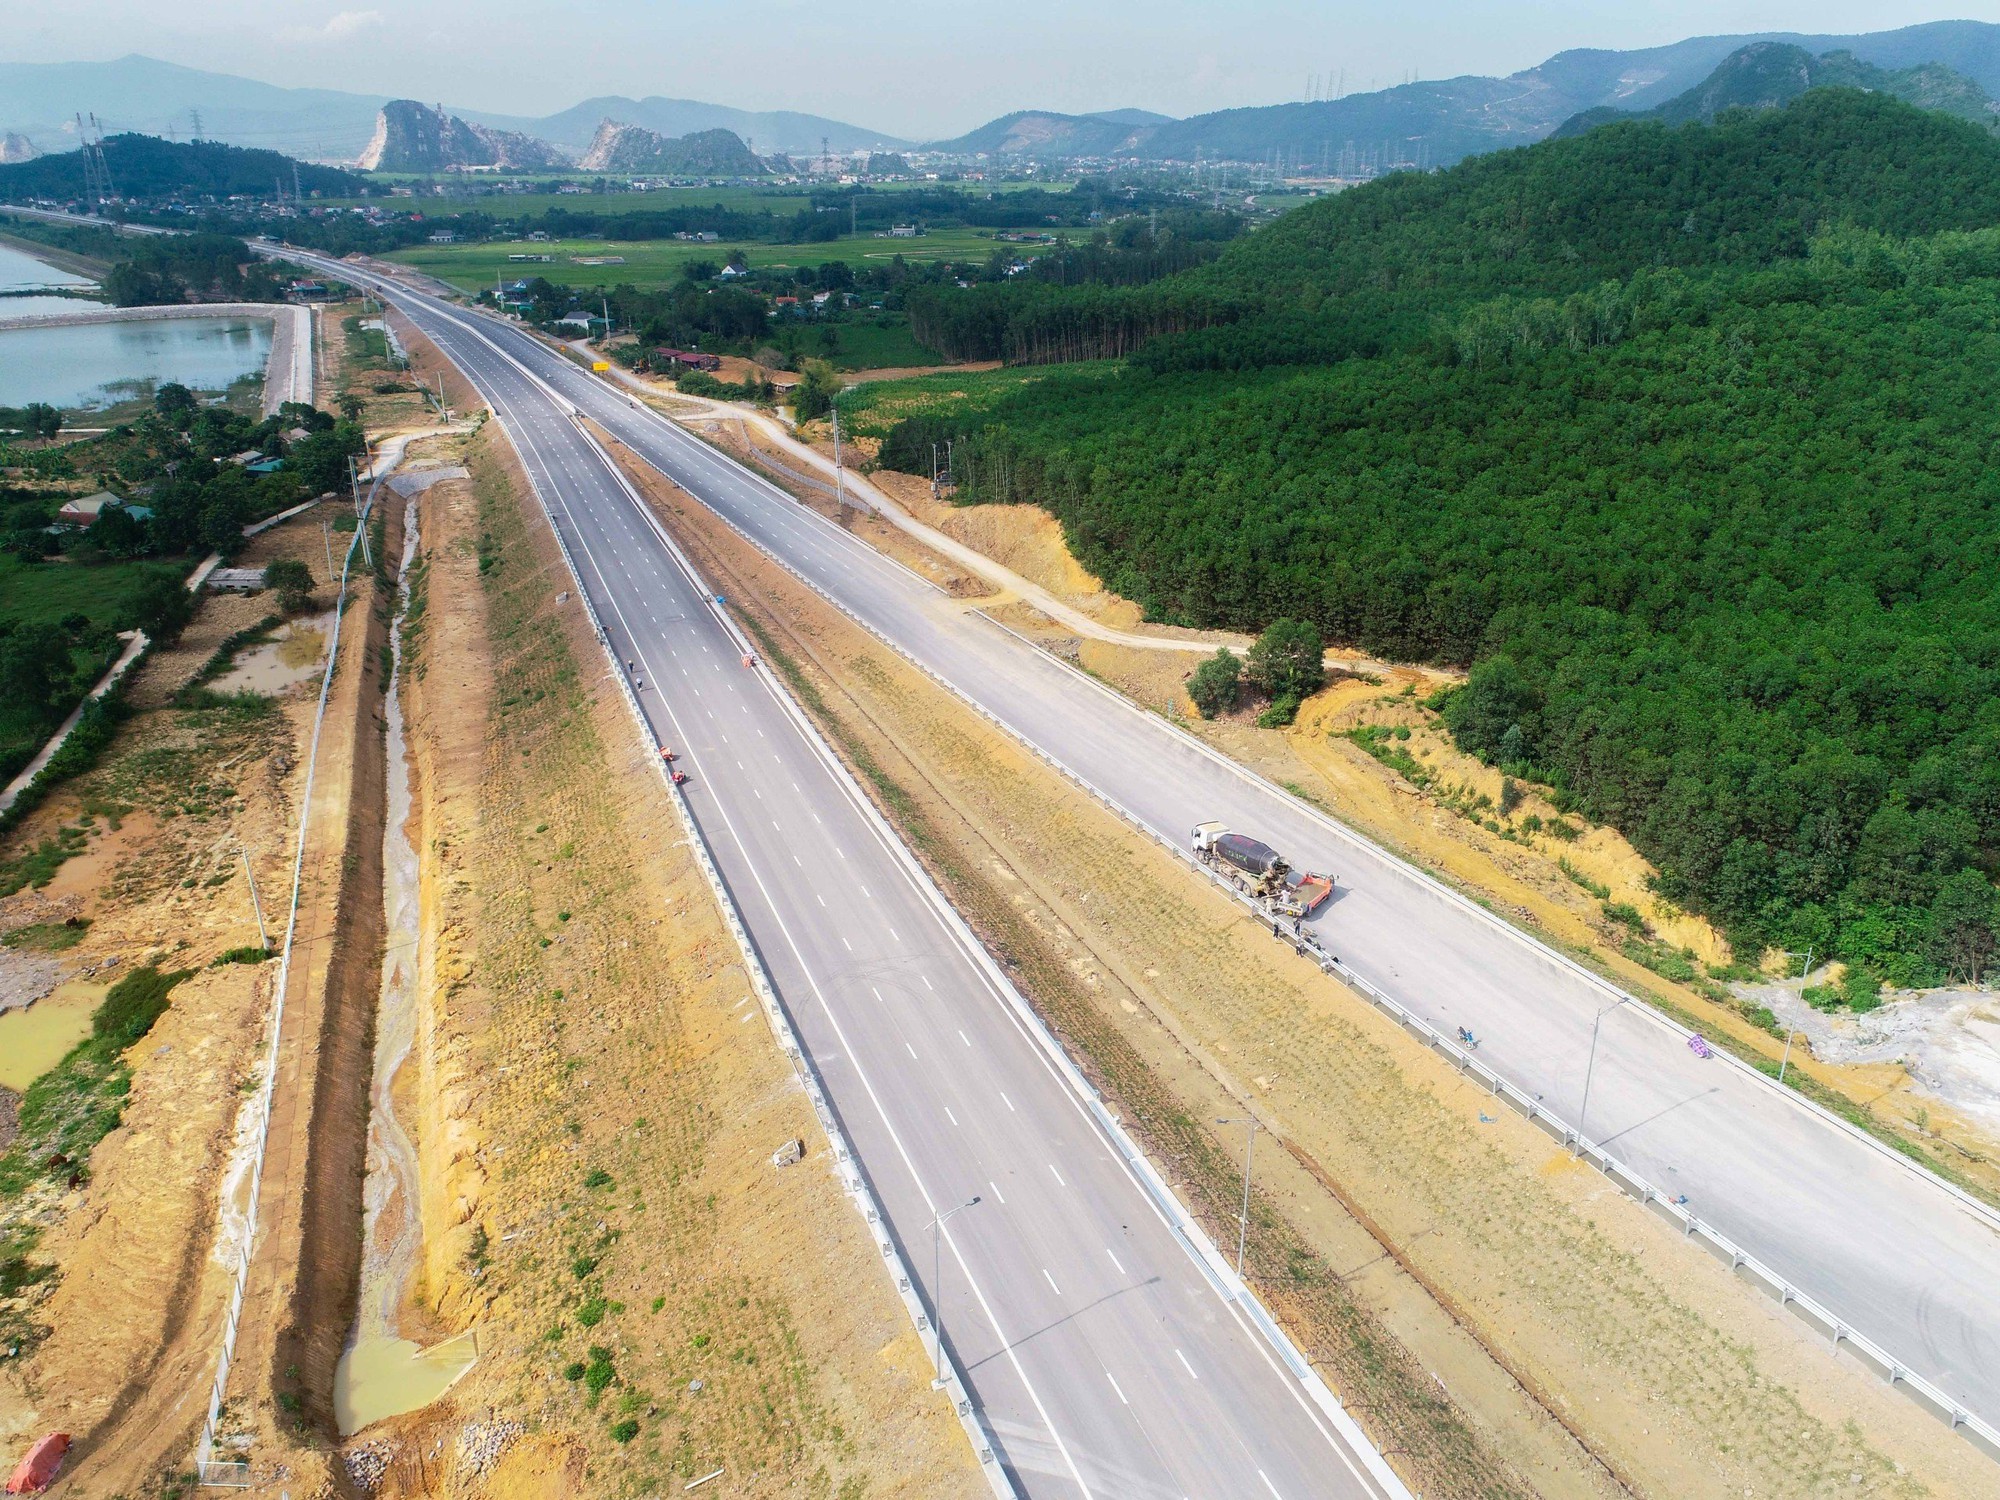 Hoàn thành hầm xuyên núi trên cao tốc Bắc - Nam qua Thanh Hóa - Nghệ An | Tạp chí Giao thông vận tải